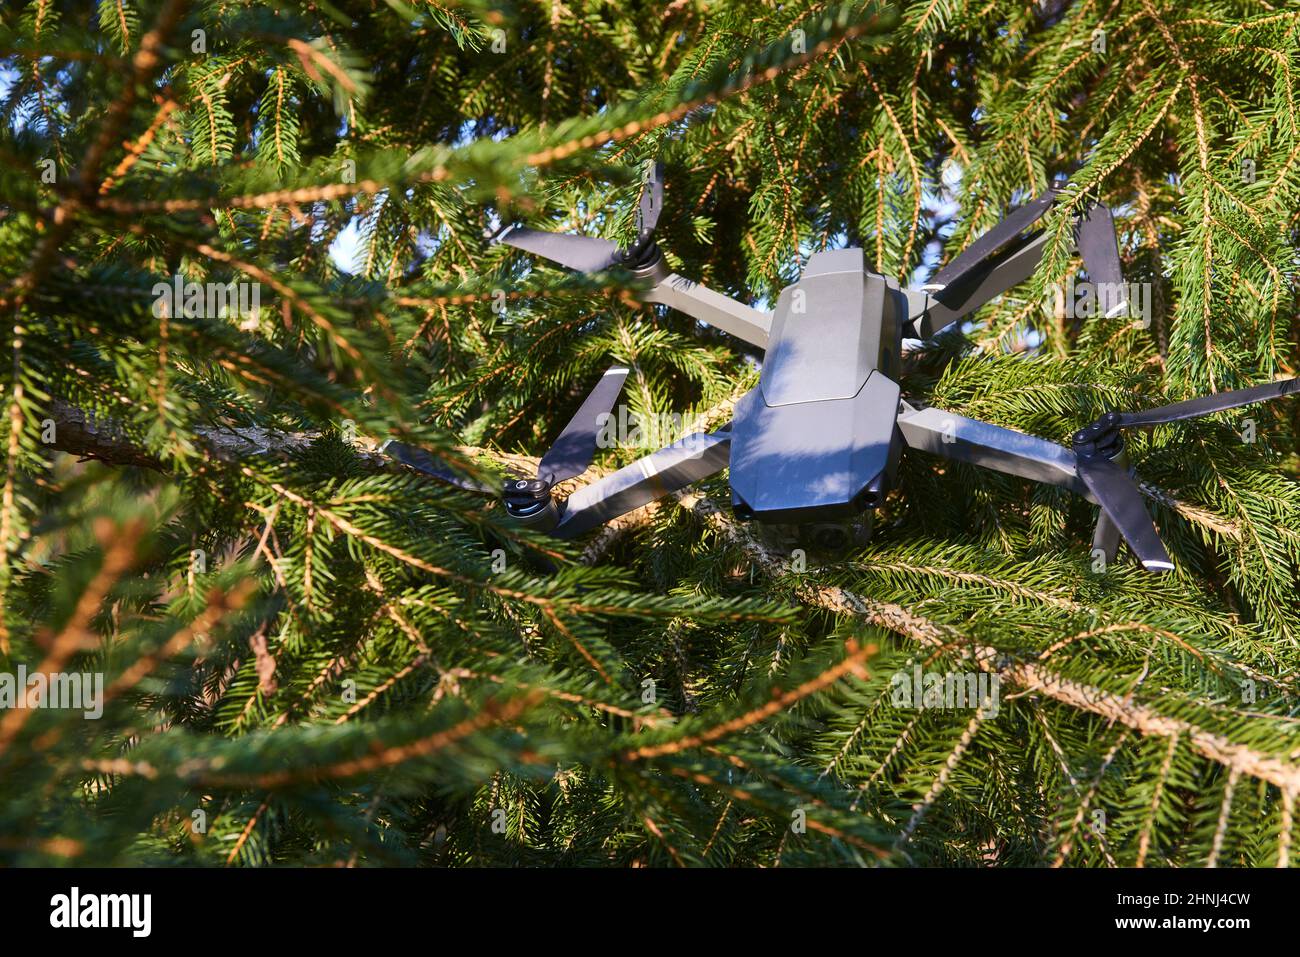 Un drone cassé a détruit un drone après un accident accroché dans les branches d'un arbre Banque D'Images